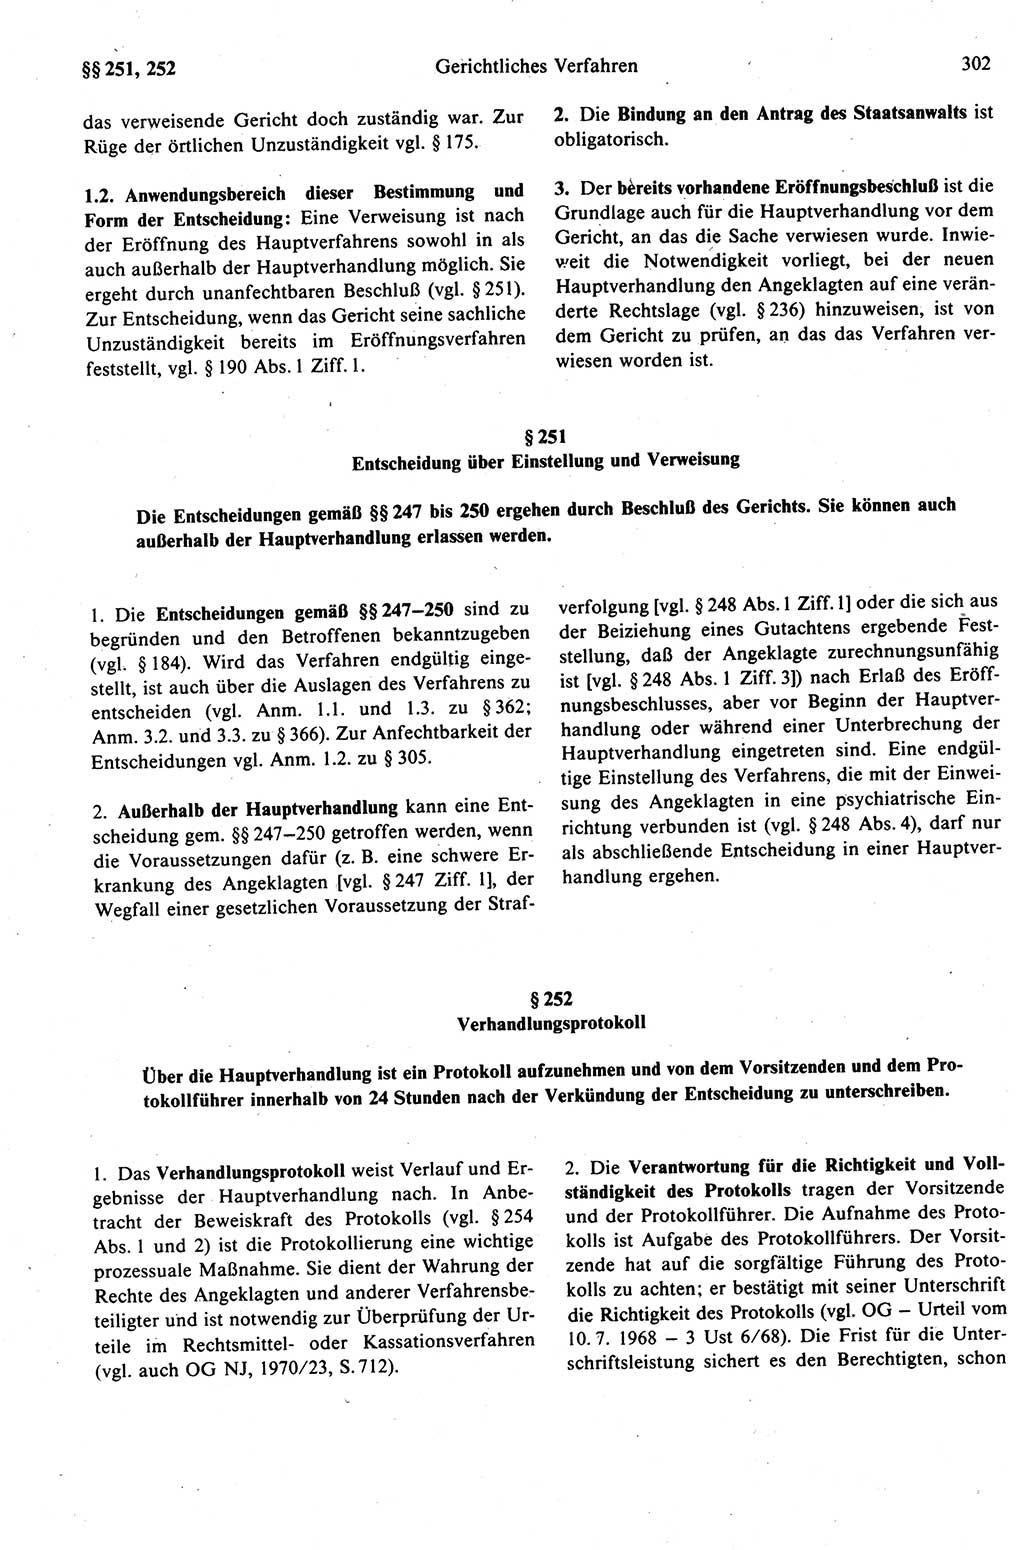 Strafprozeßrecht der DDR (Deutsche Demokratische Republik), Kommentar zur Strafprozeßordnung (StPO) 1989, Seite 302 (Strafprozeßr. DDR Komm. StPO 1989, S. 302)